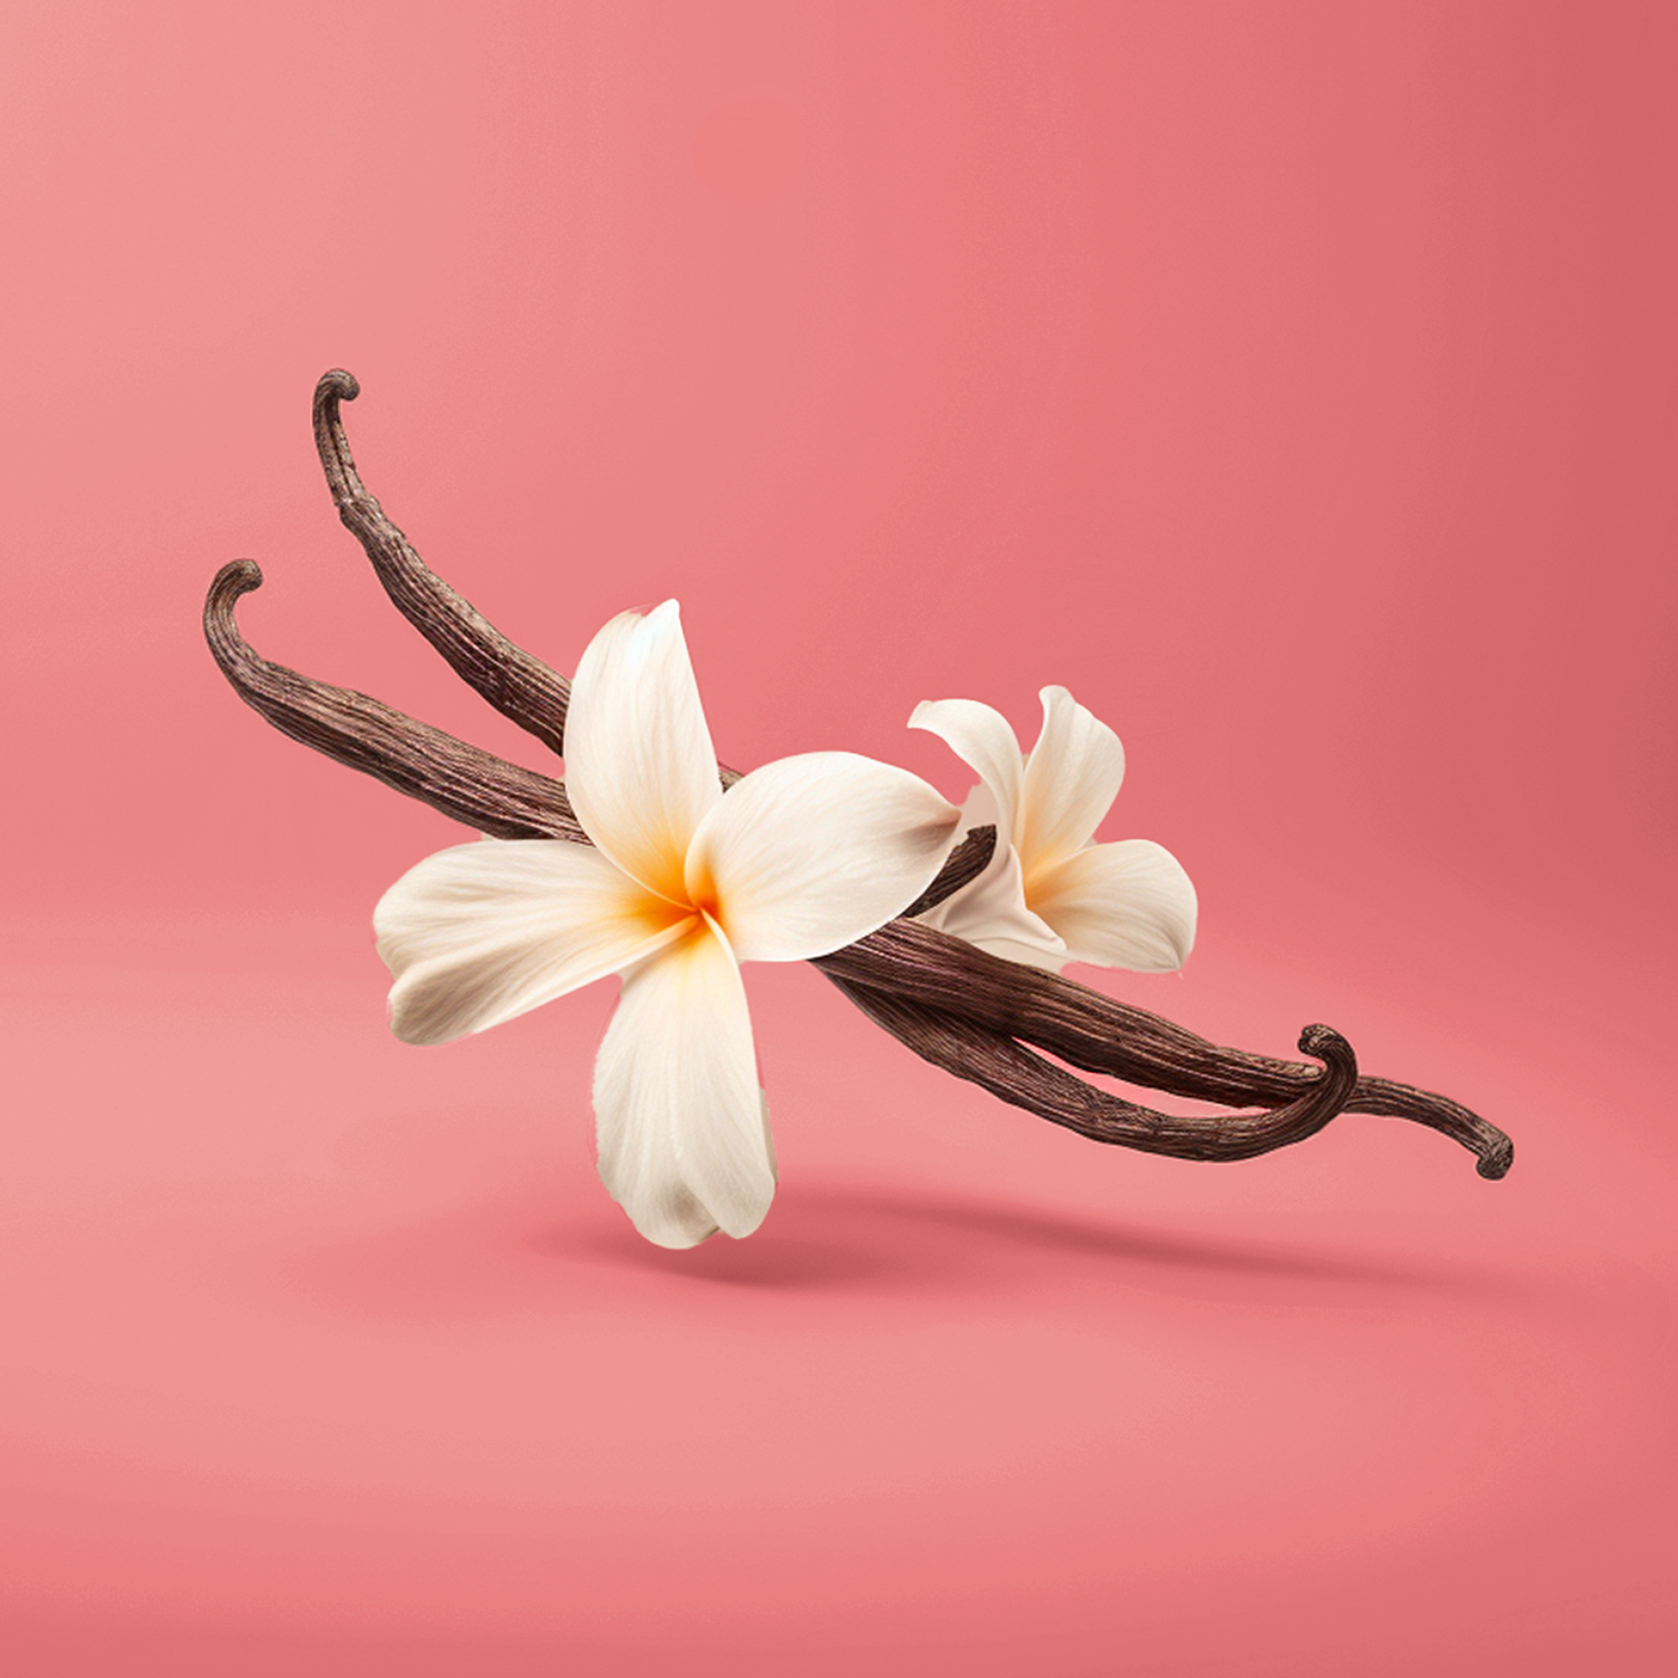 Accord de vanille. Sont représenté une photographie de 2 gousses de vanille brun foncé croisées sur un fond rose. En leurs centre 2  fleur de vanille blanche avec un coeur jaune. 